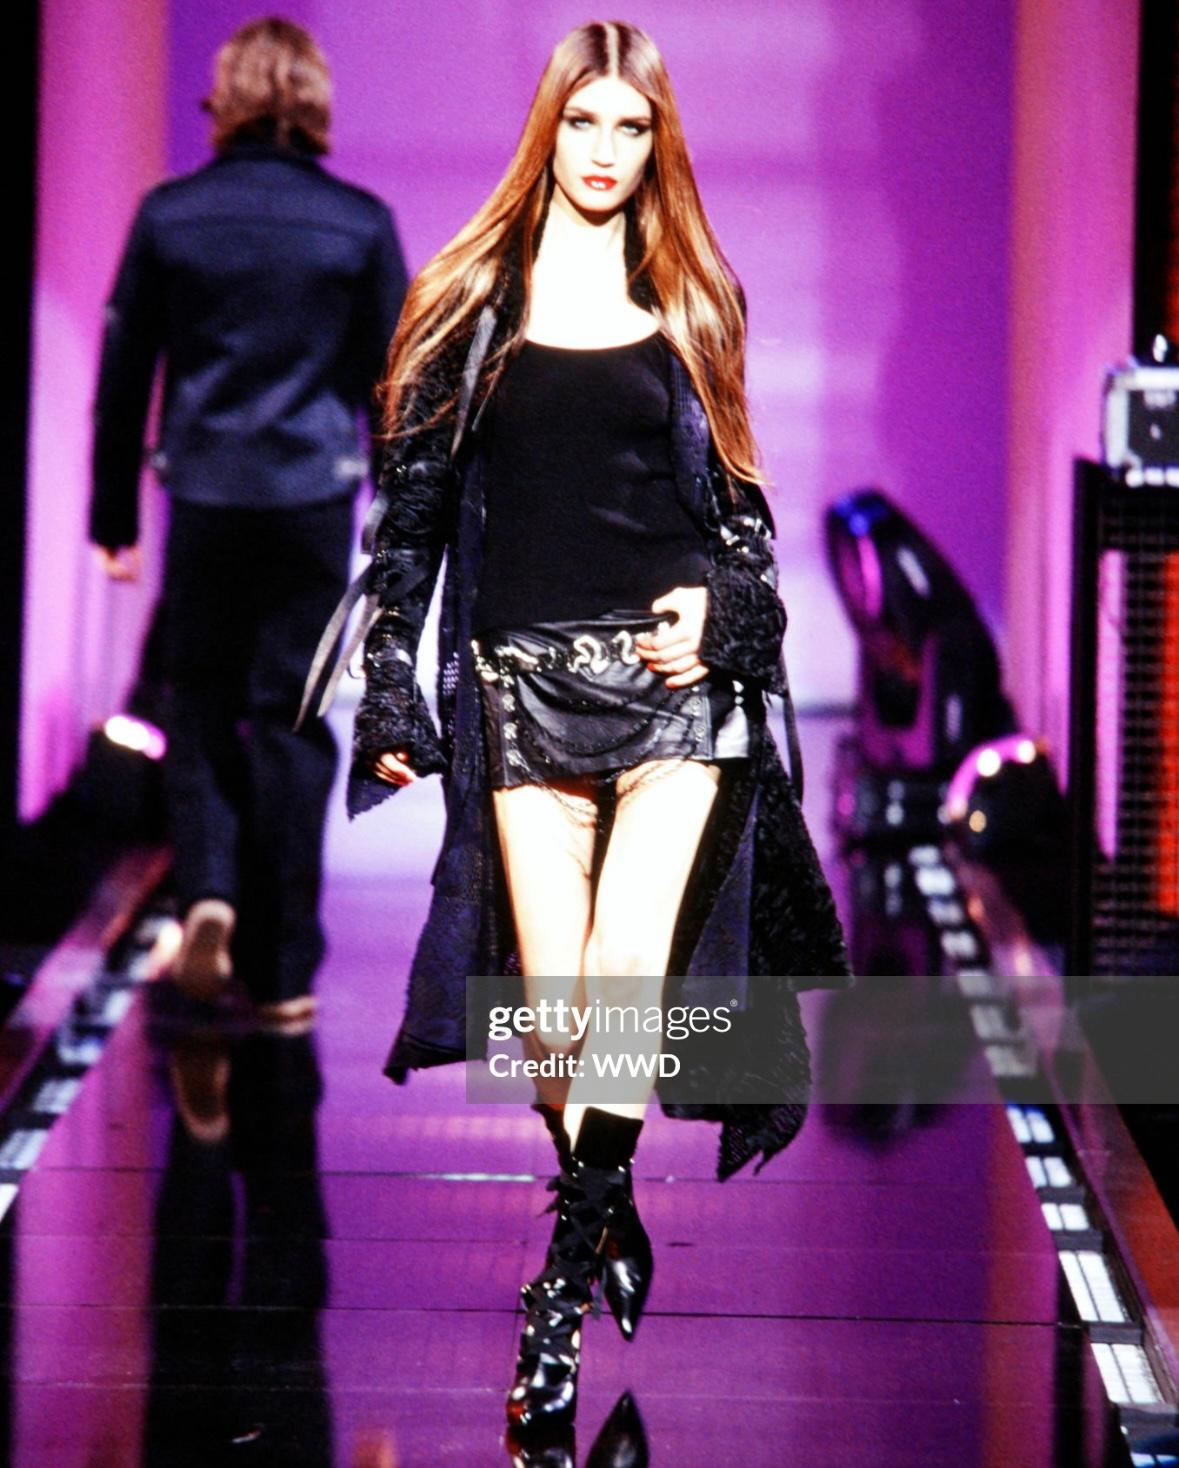 Présentation d'une fabuleuse mini-jupe en cuir noir Versace, créée par Donatella Versace. Issue de la collection automne/hiver 2003, cette mini-jupe est entièrement construite en cuir noir et une version a été présentée sur le podium de la saison.